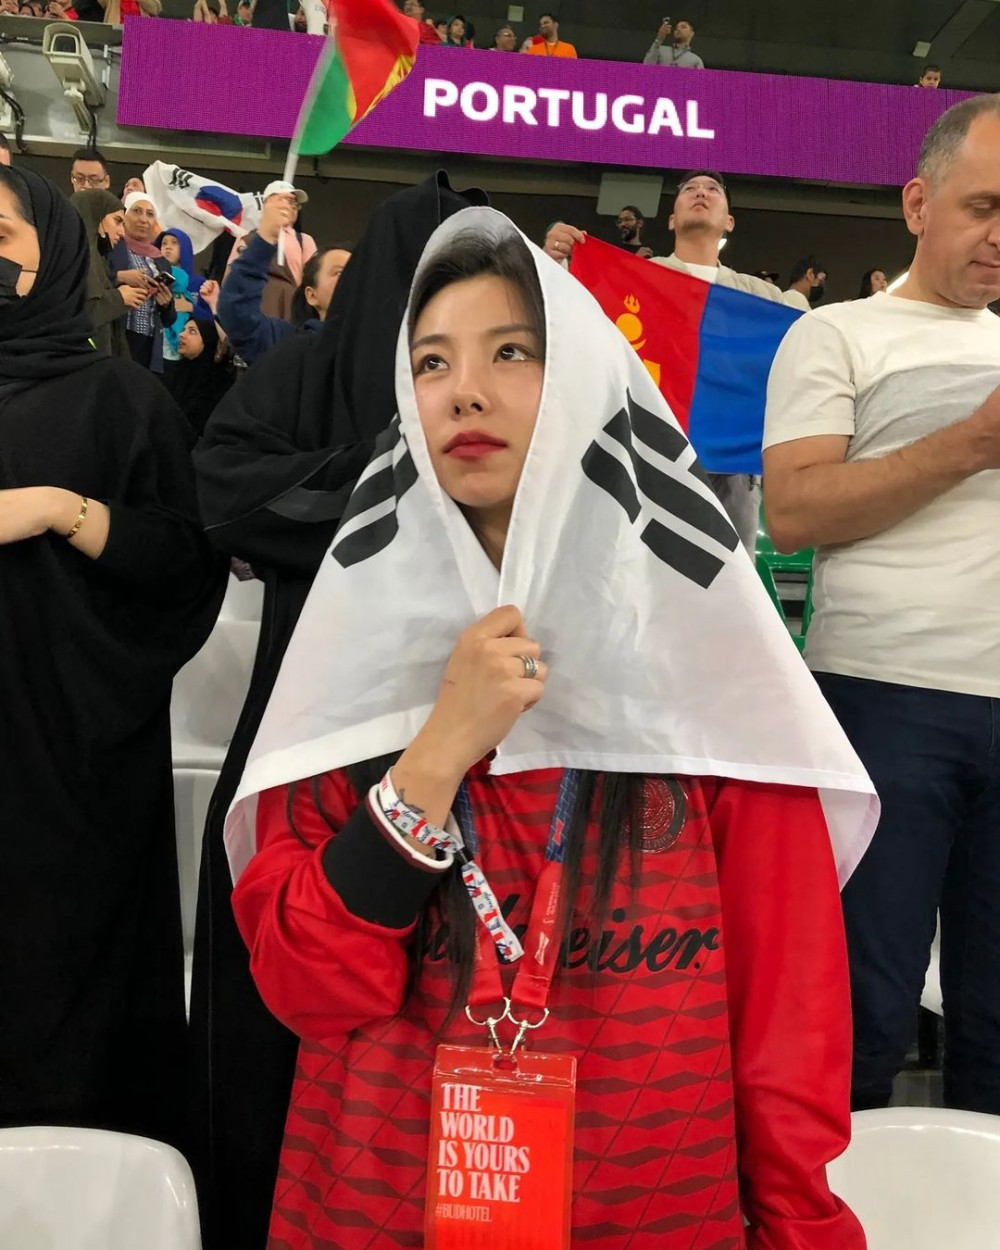 Хвиин из MAMAMOO болеет за корейскую футбольную команду на стадионе в Катаре